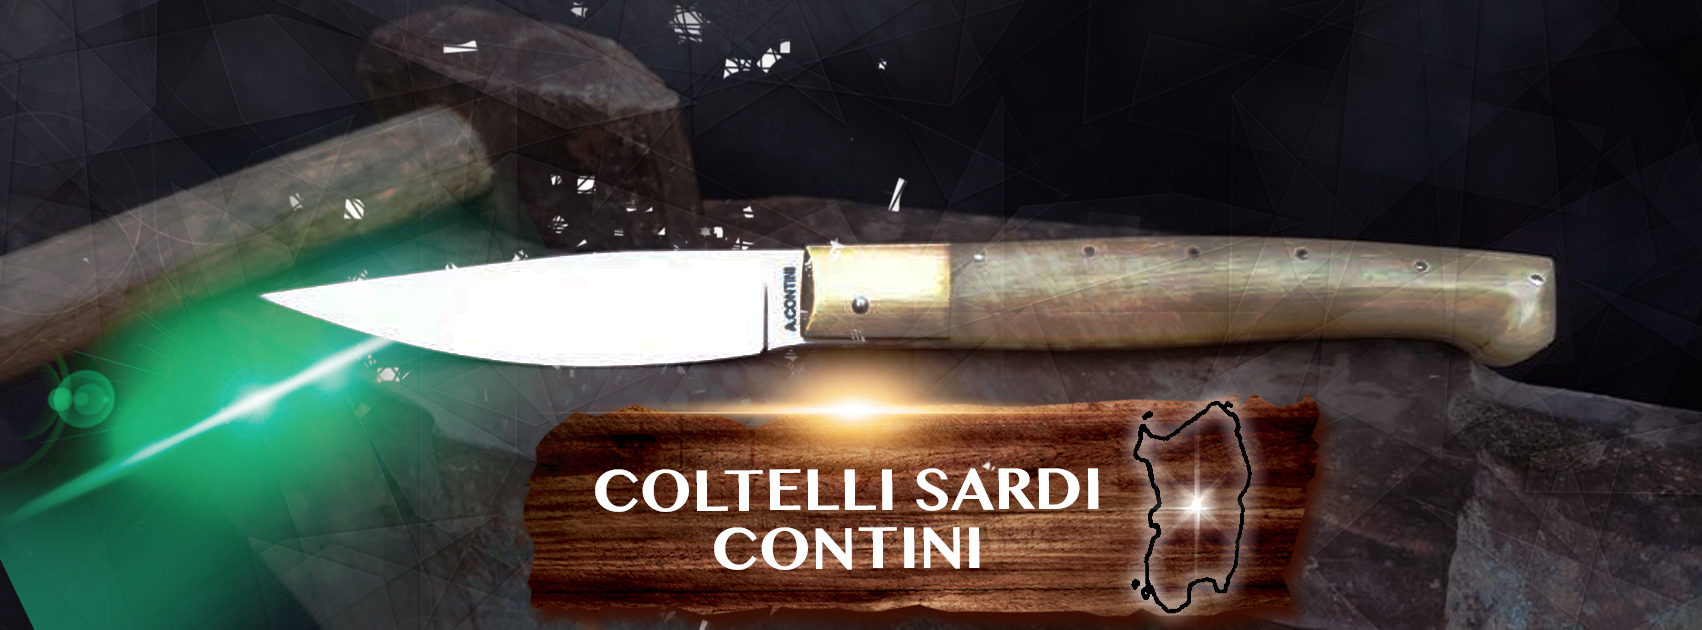 Coltelli Sardi - Il negozio online di coltelli sardi artigianali